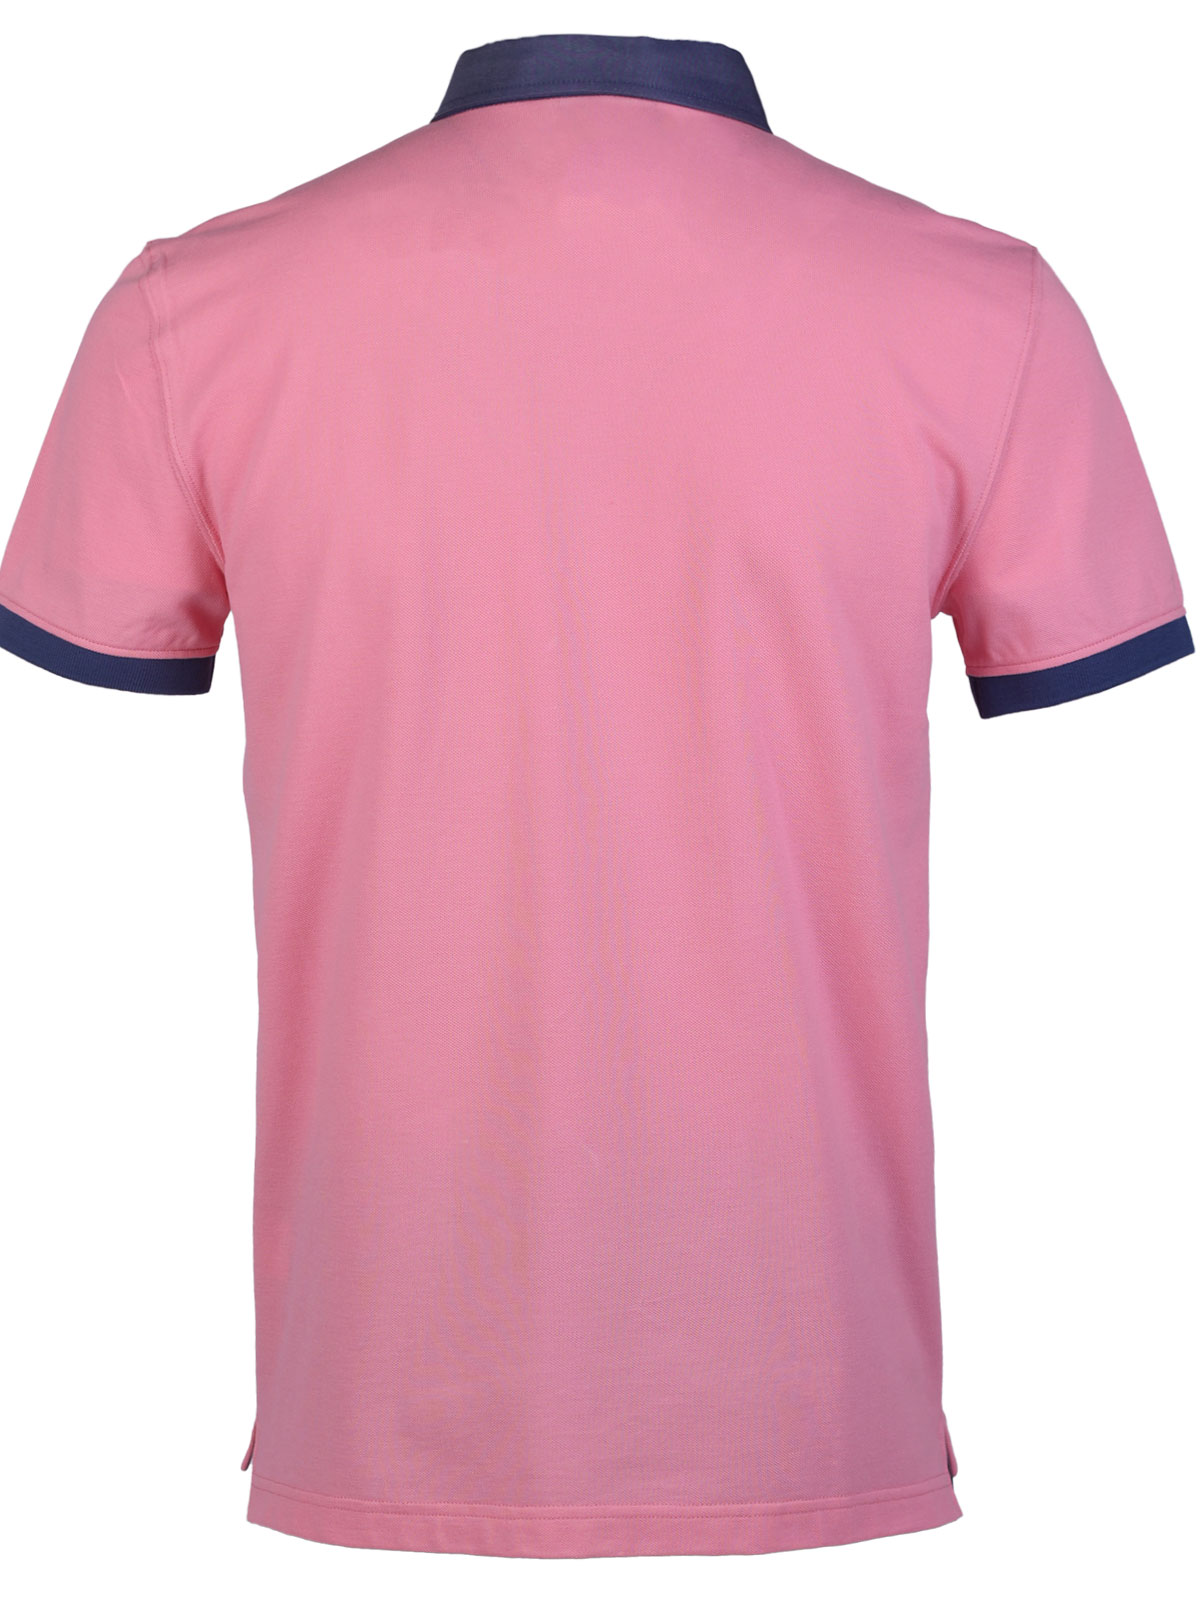 Μπλούζα σε ροζ χρώμα με τζιν γιακά - 93430 € 42.74 img2